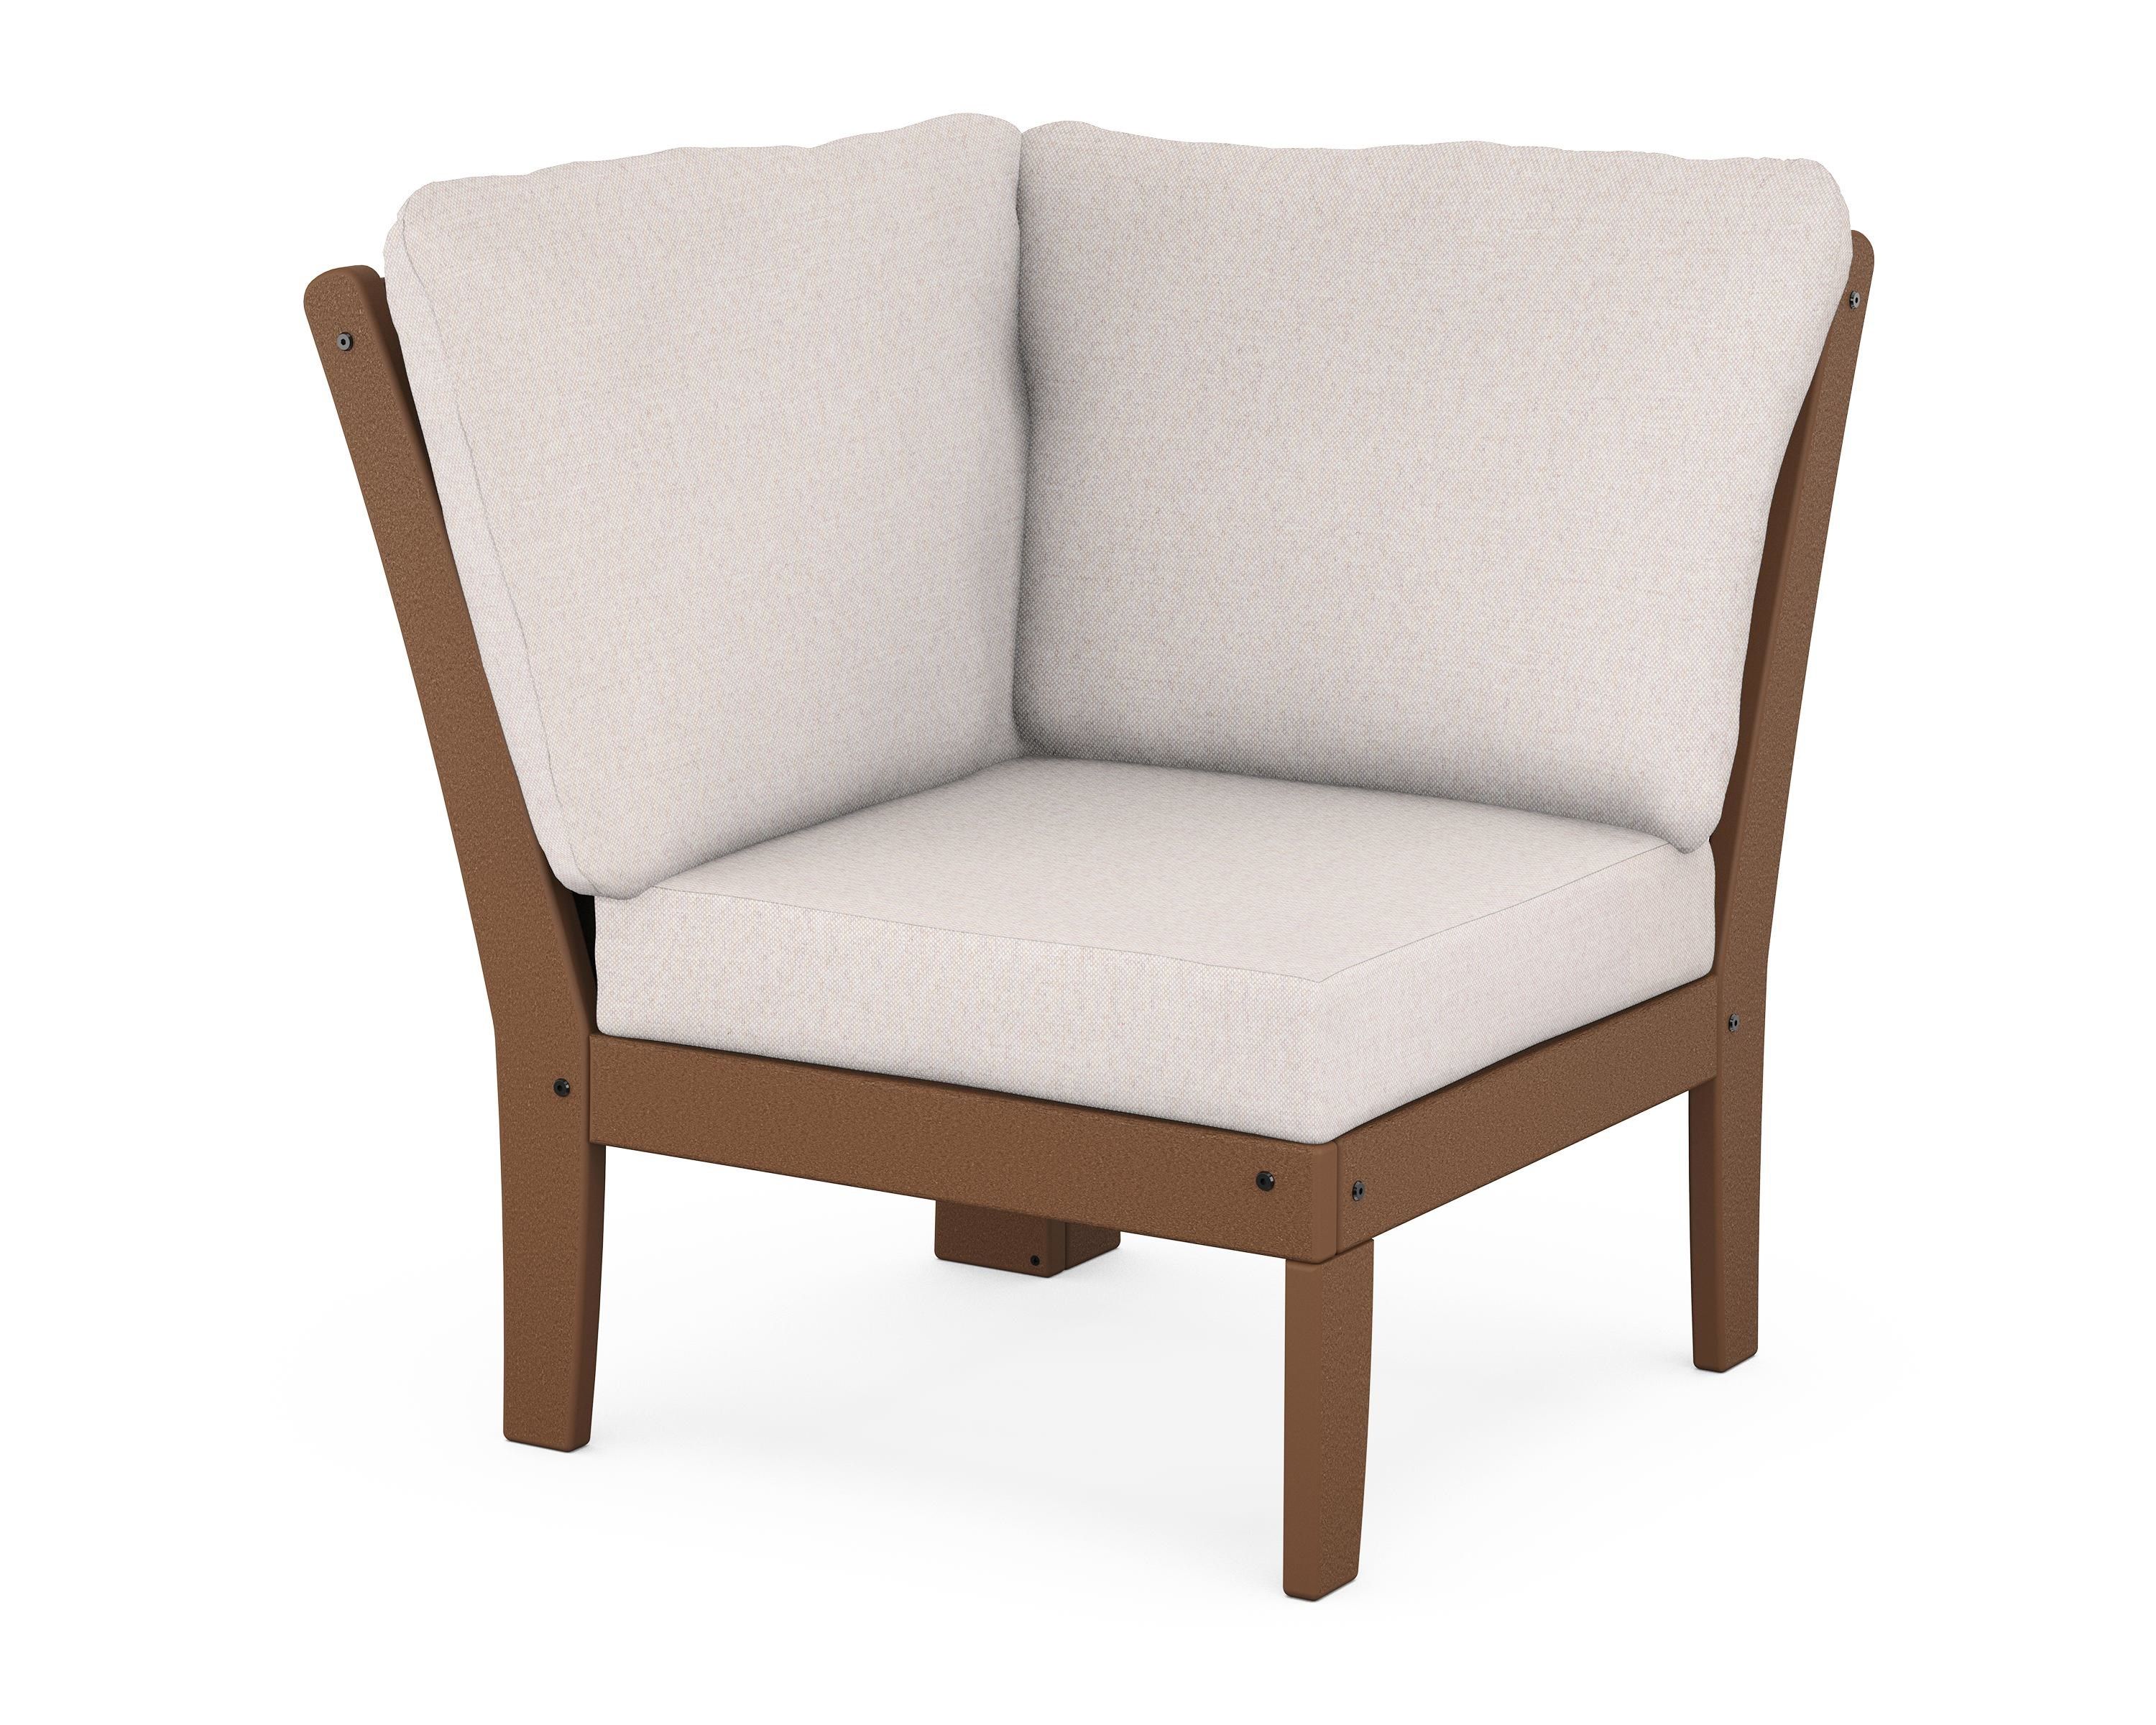 POLYWOOD Braxton Modular Corner Chair